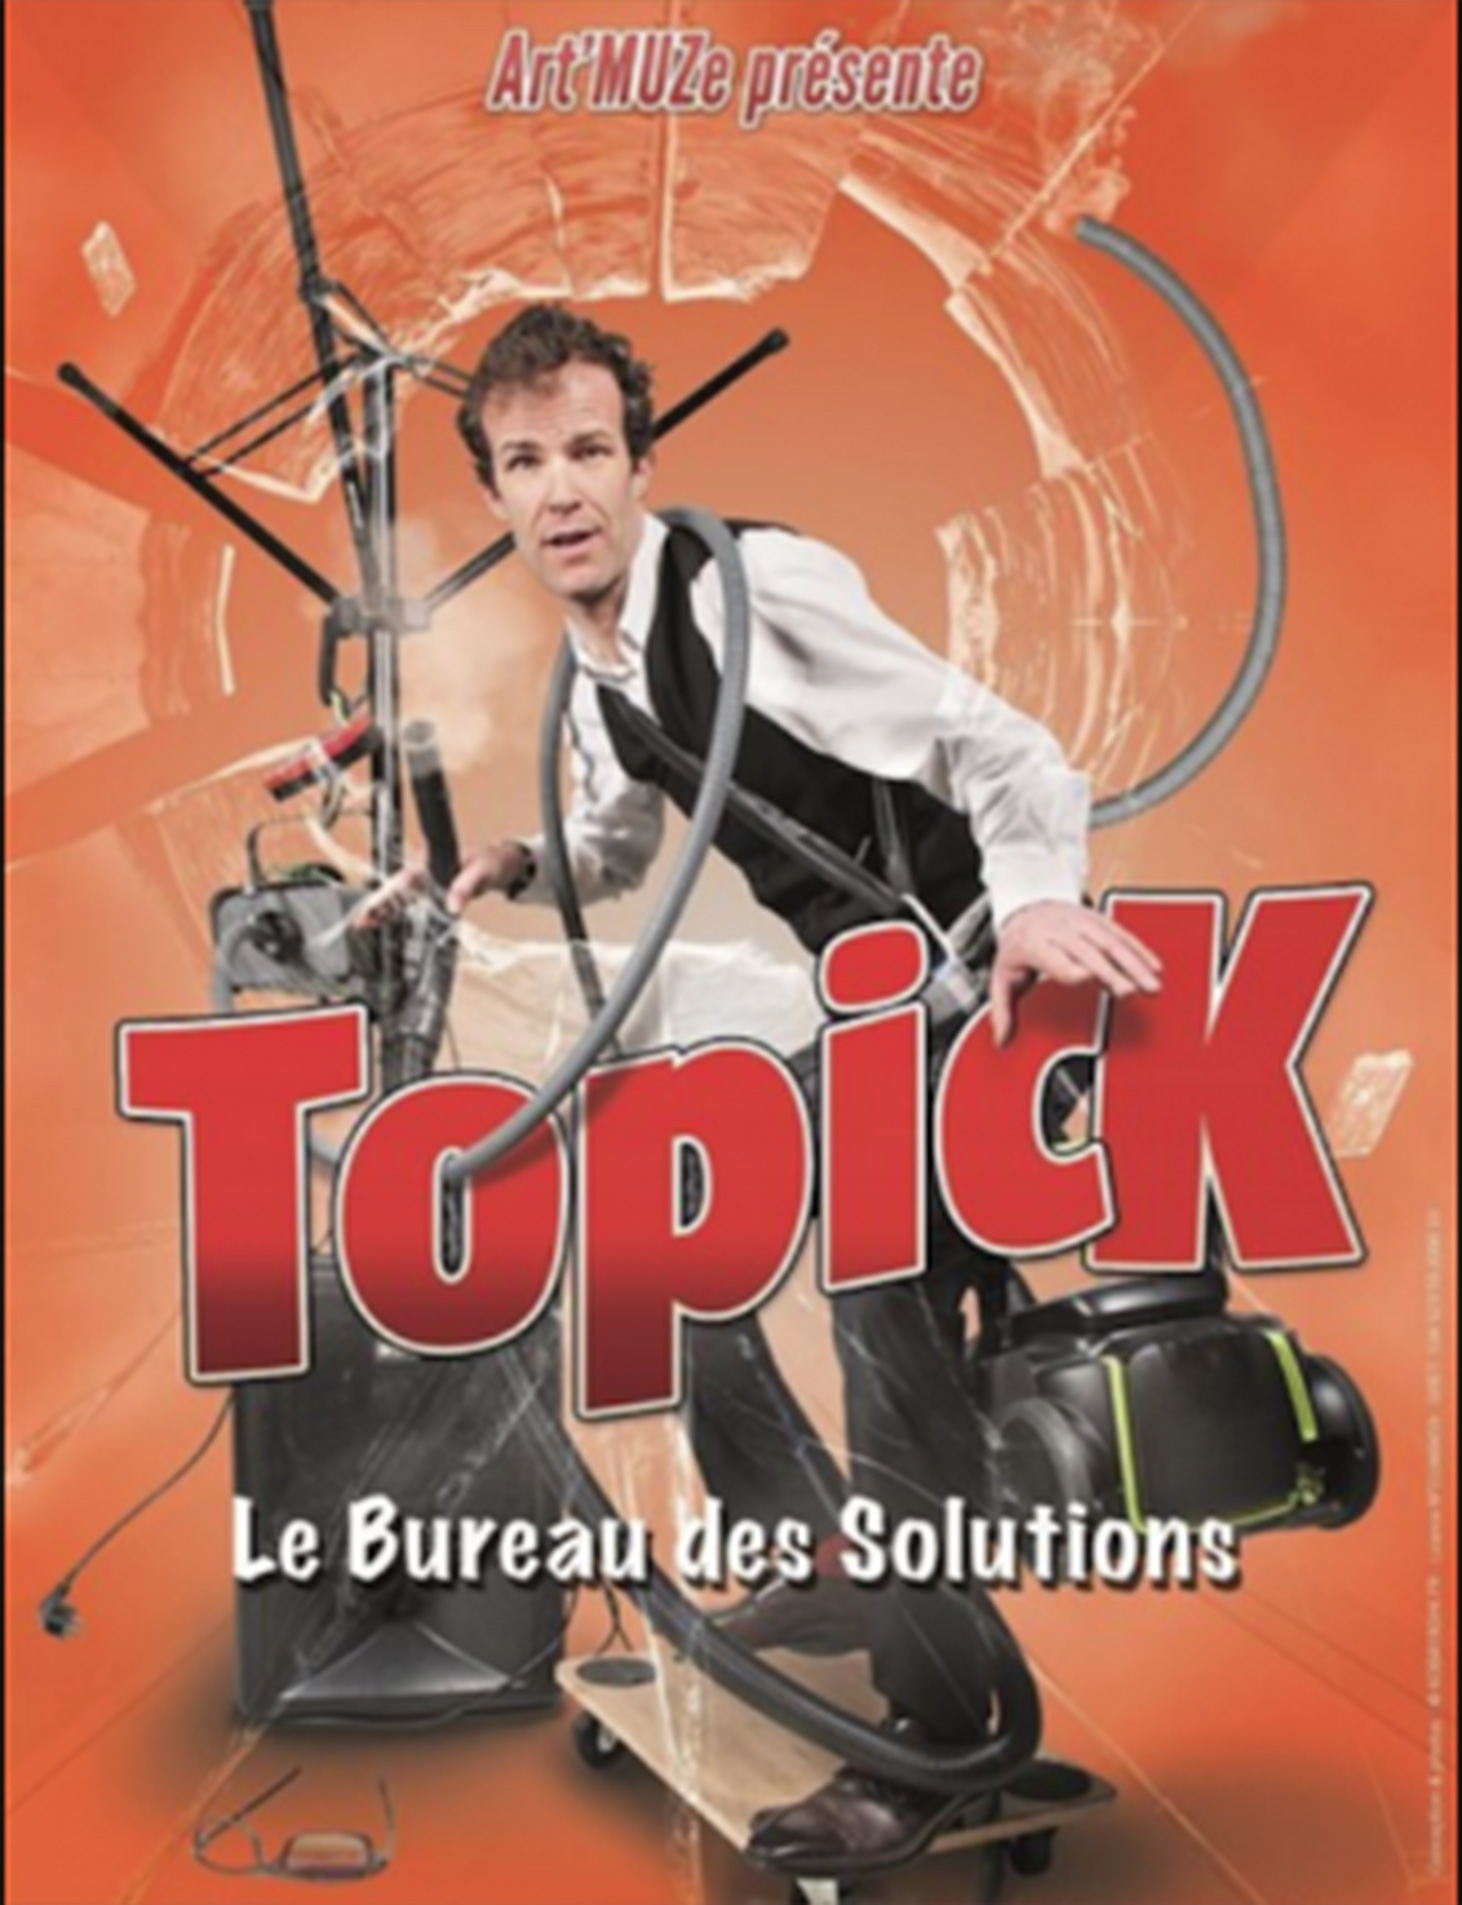 Topick-Le-Bureau-des-Solutions_260118G